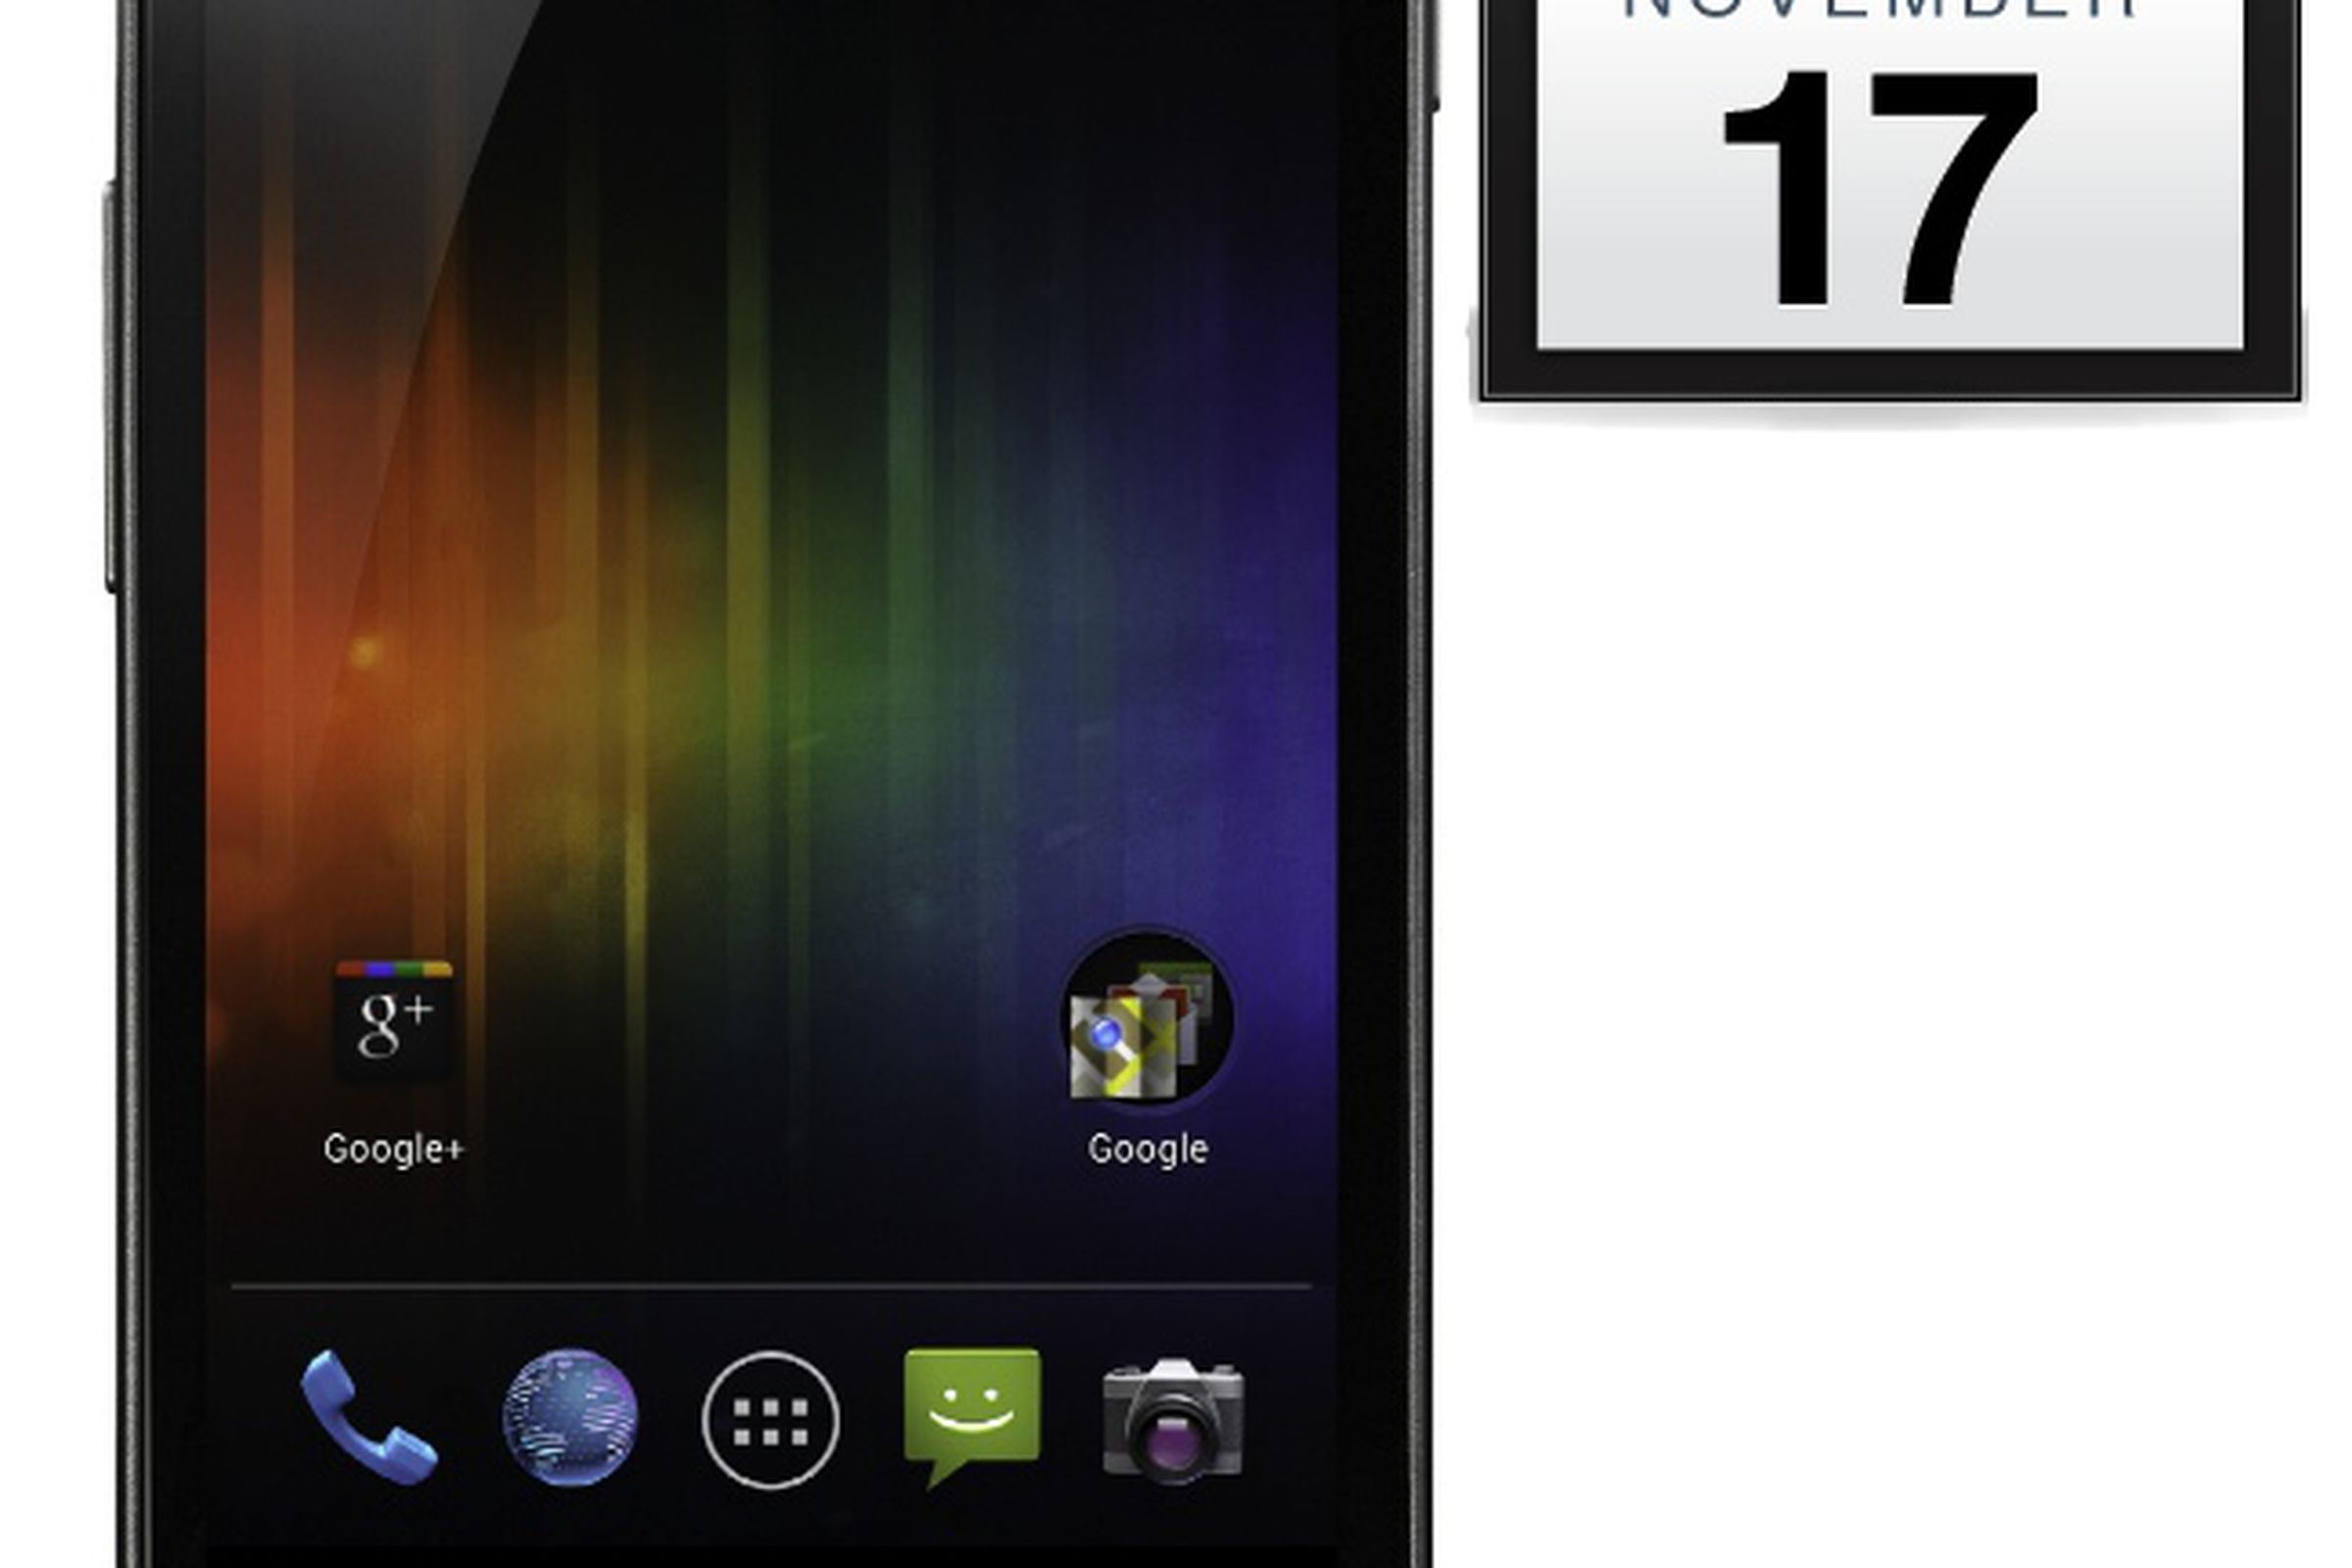 Galaxy Nexus Nov 17